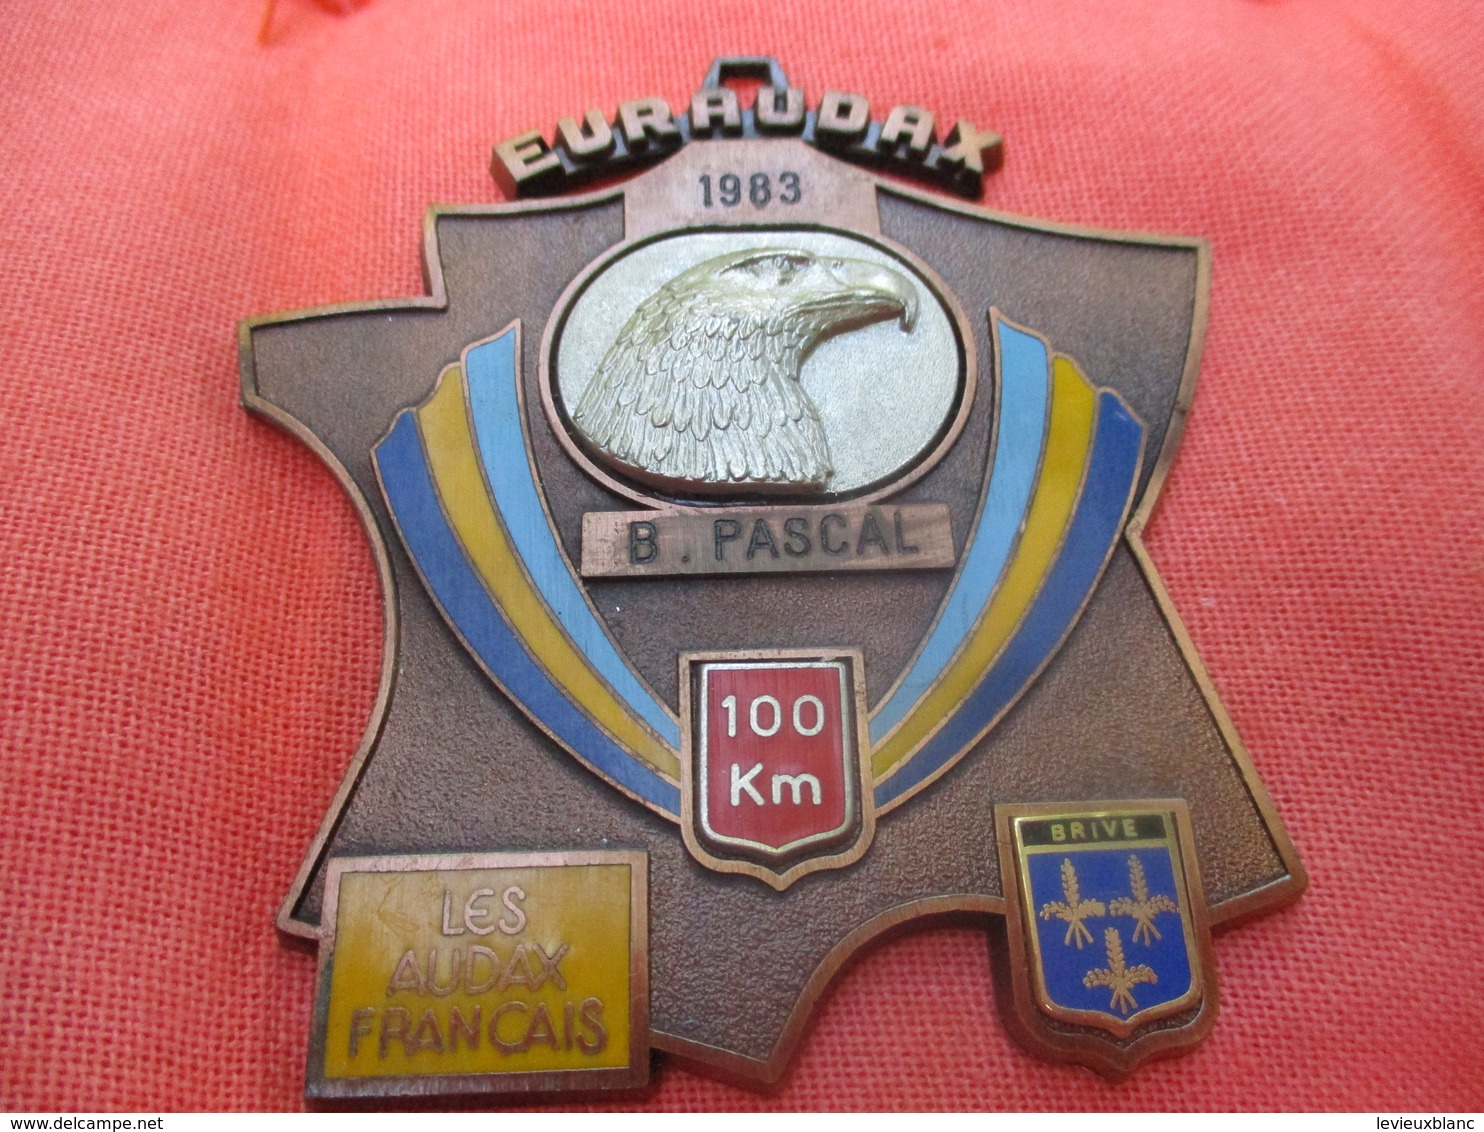 Médaille De Sport/Cyclisme/ EURAUDAX/100 KM/ / BRIVE/Les Audax Français/1983    SPO291 - Wielrennen